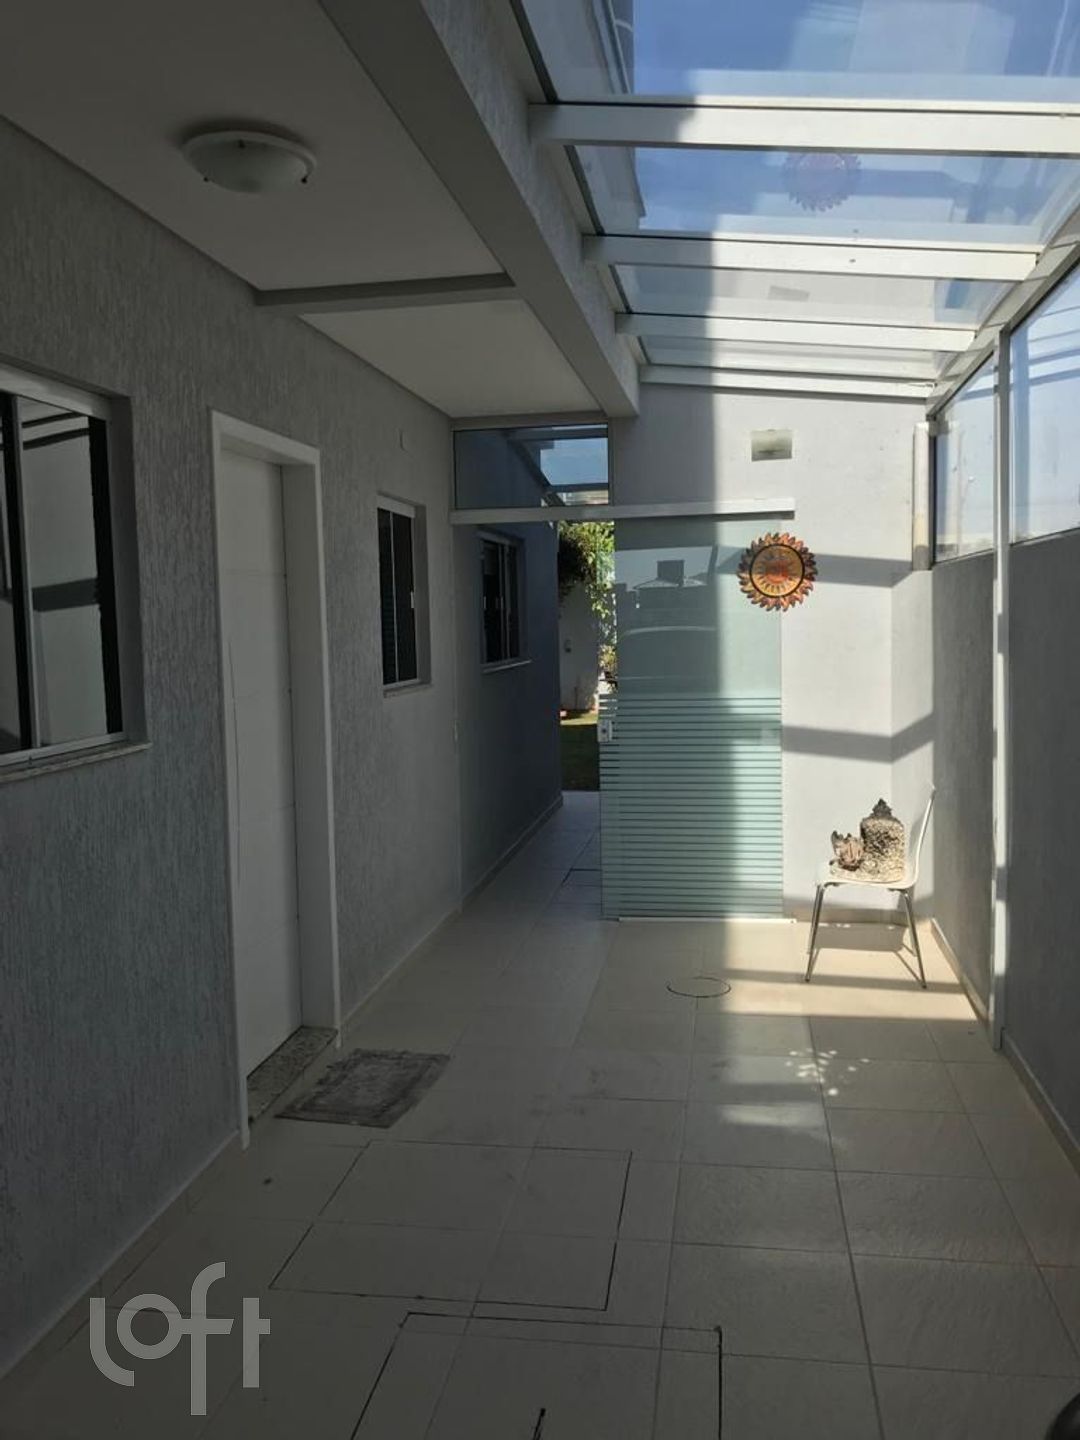 VENDA &#8211; Casa de 4 quartos no bairro Ingleses, Florianópolis &#8211; PU1jh1o8i